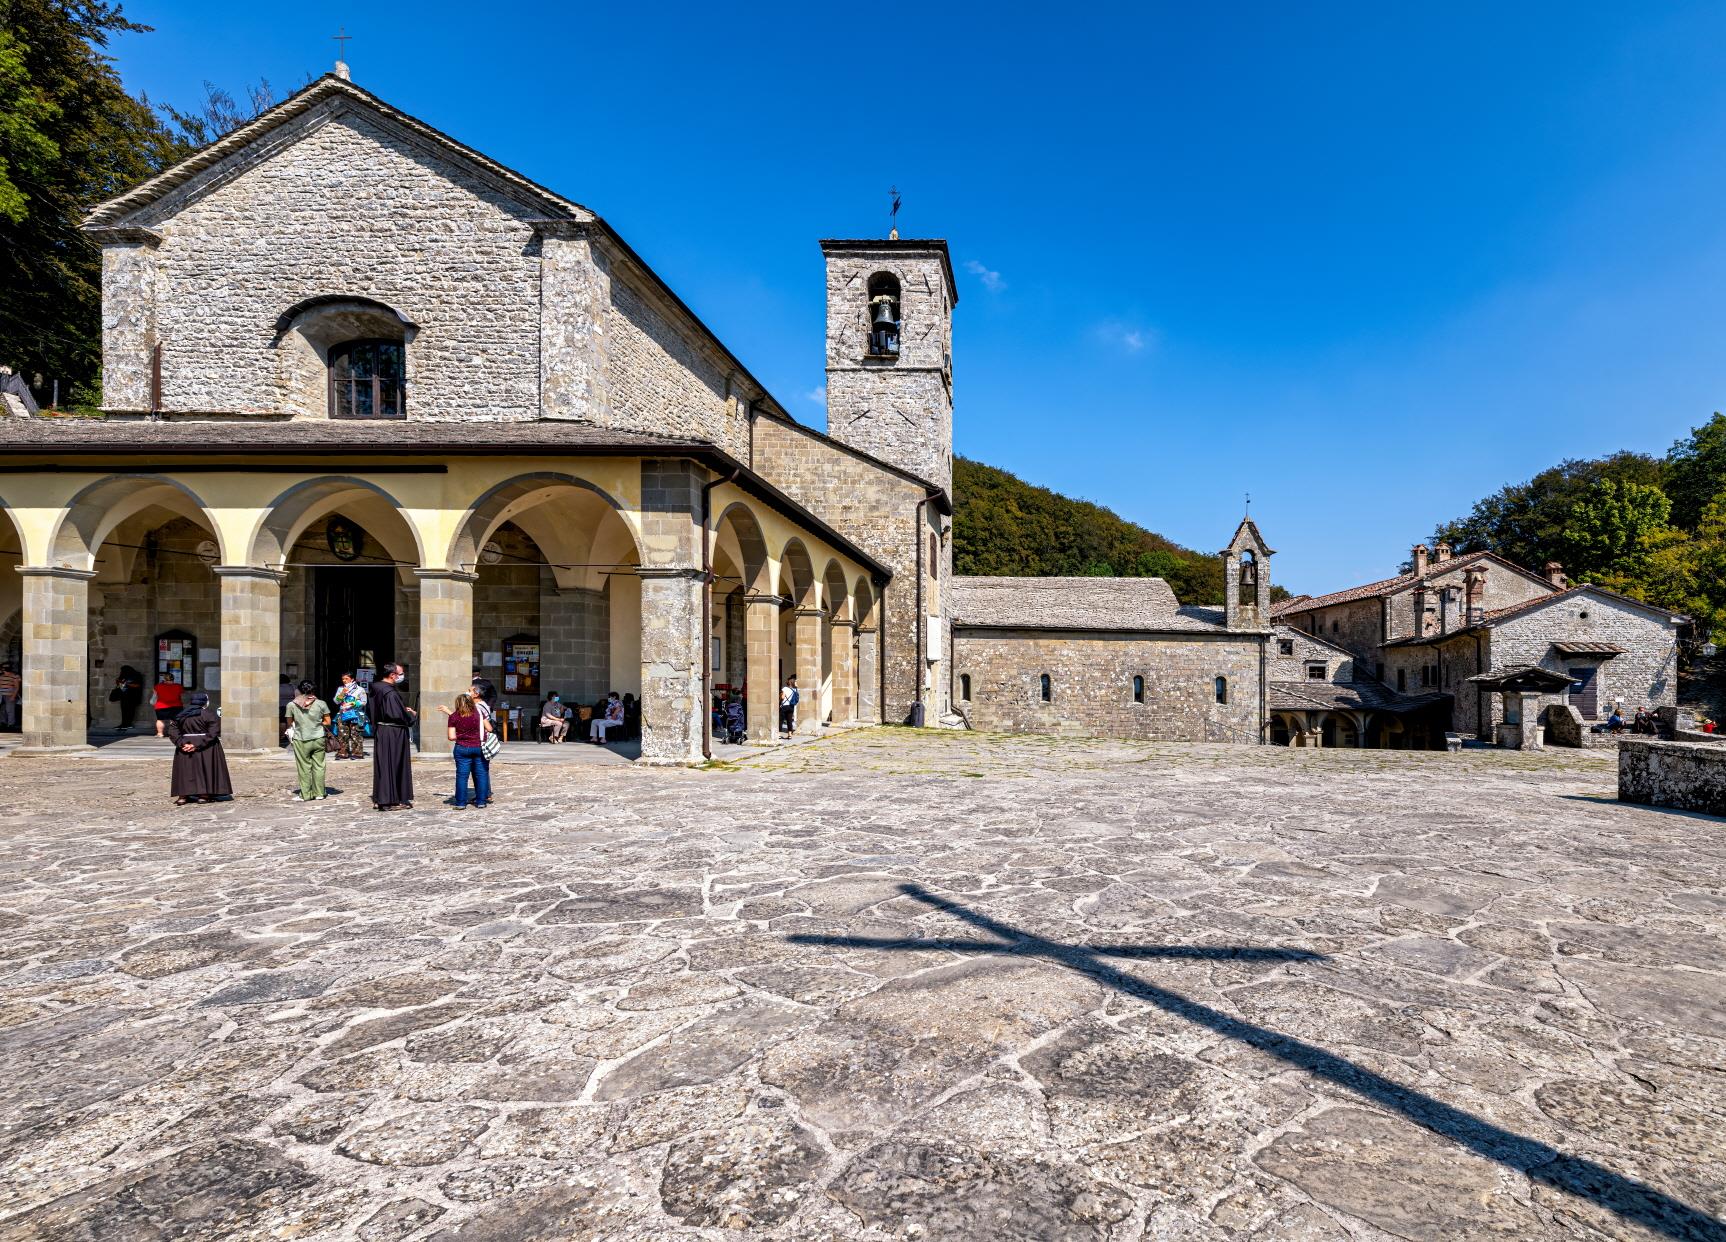 라베르나 프란치스코 수도원  La Verna - Franciscan Sanctuary